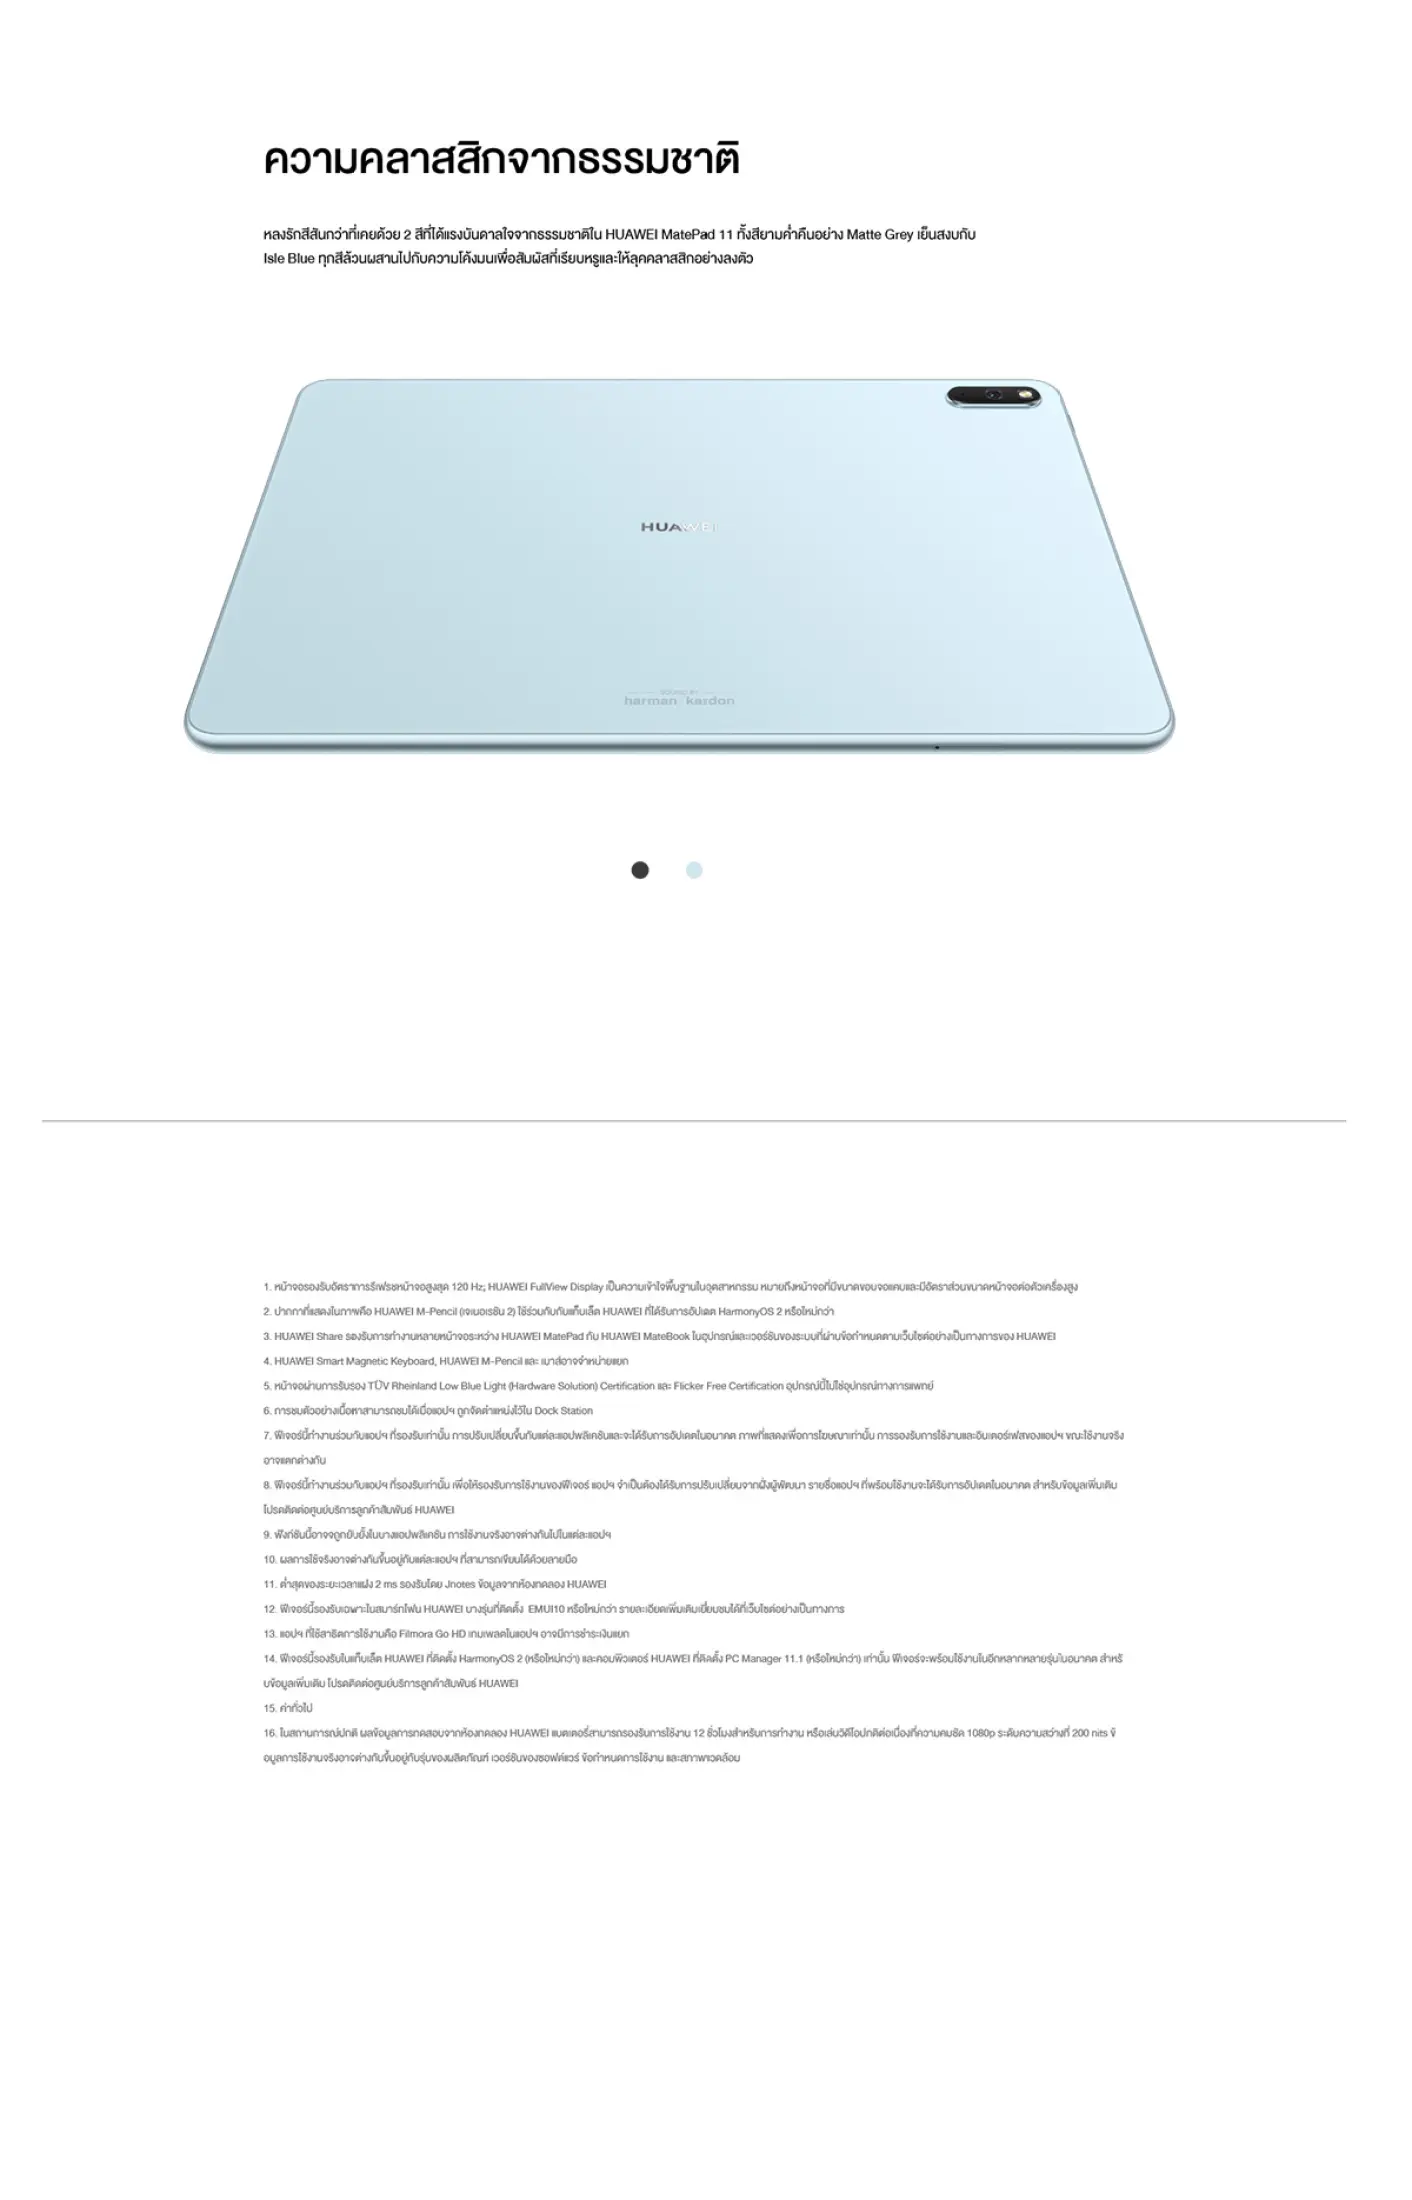 เกี่ยวกับสินค้า H MatePad 11 Wifi (ไม่รองรับซิมการ์ด) Ram6/128gb เครื่องศูนย์ไทย ราคาพิเศษ ประกันร้าน จอ LCD 120Hz, ลำโพง Harman Kardon 4 ตัว และชิป SD 865 ส่งฟรี!